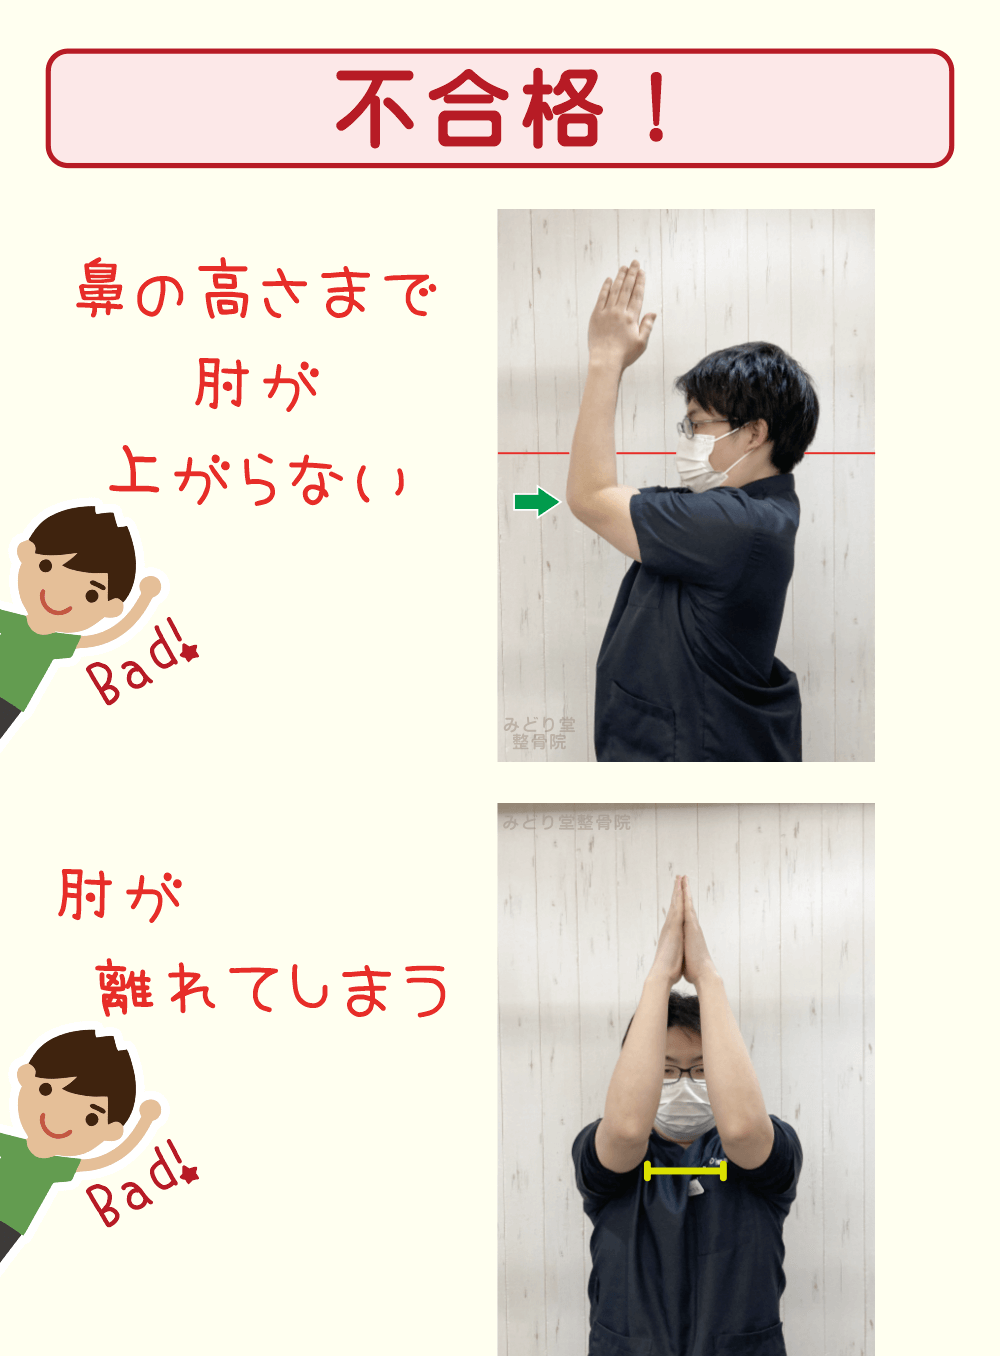 肩の柔軟性の判定：肘が鼻の高さまで上がらない方、肘どうしが離れてしまった方は不合格です。